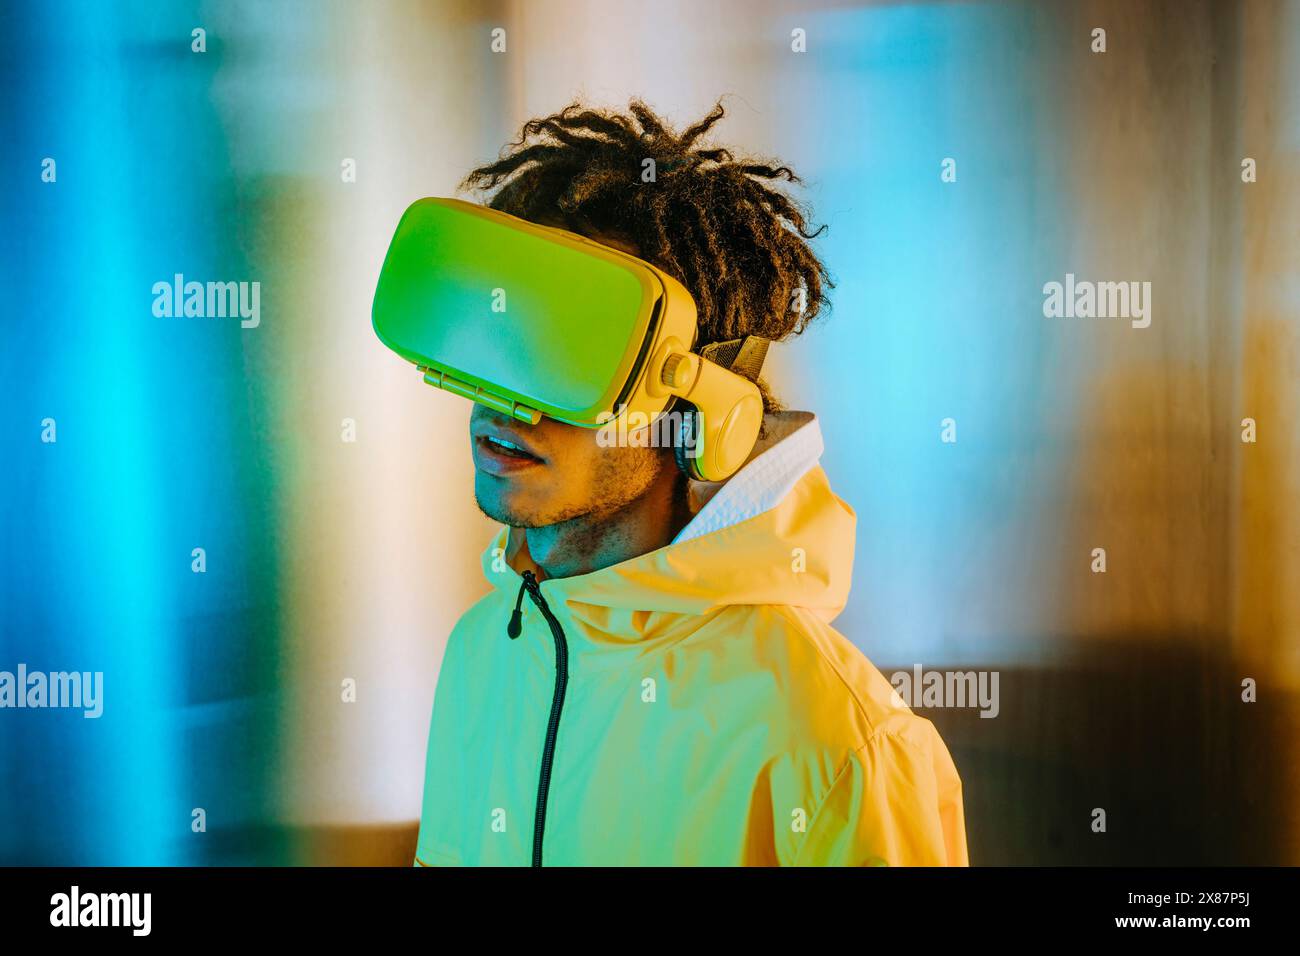 Homme avec des dreads portant un casque de réalité virtuelle près d'un mur éclairé Banque D'Images